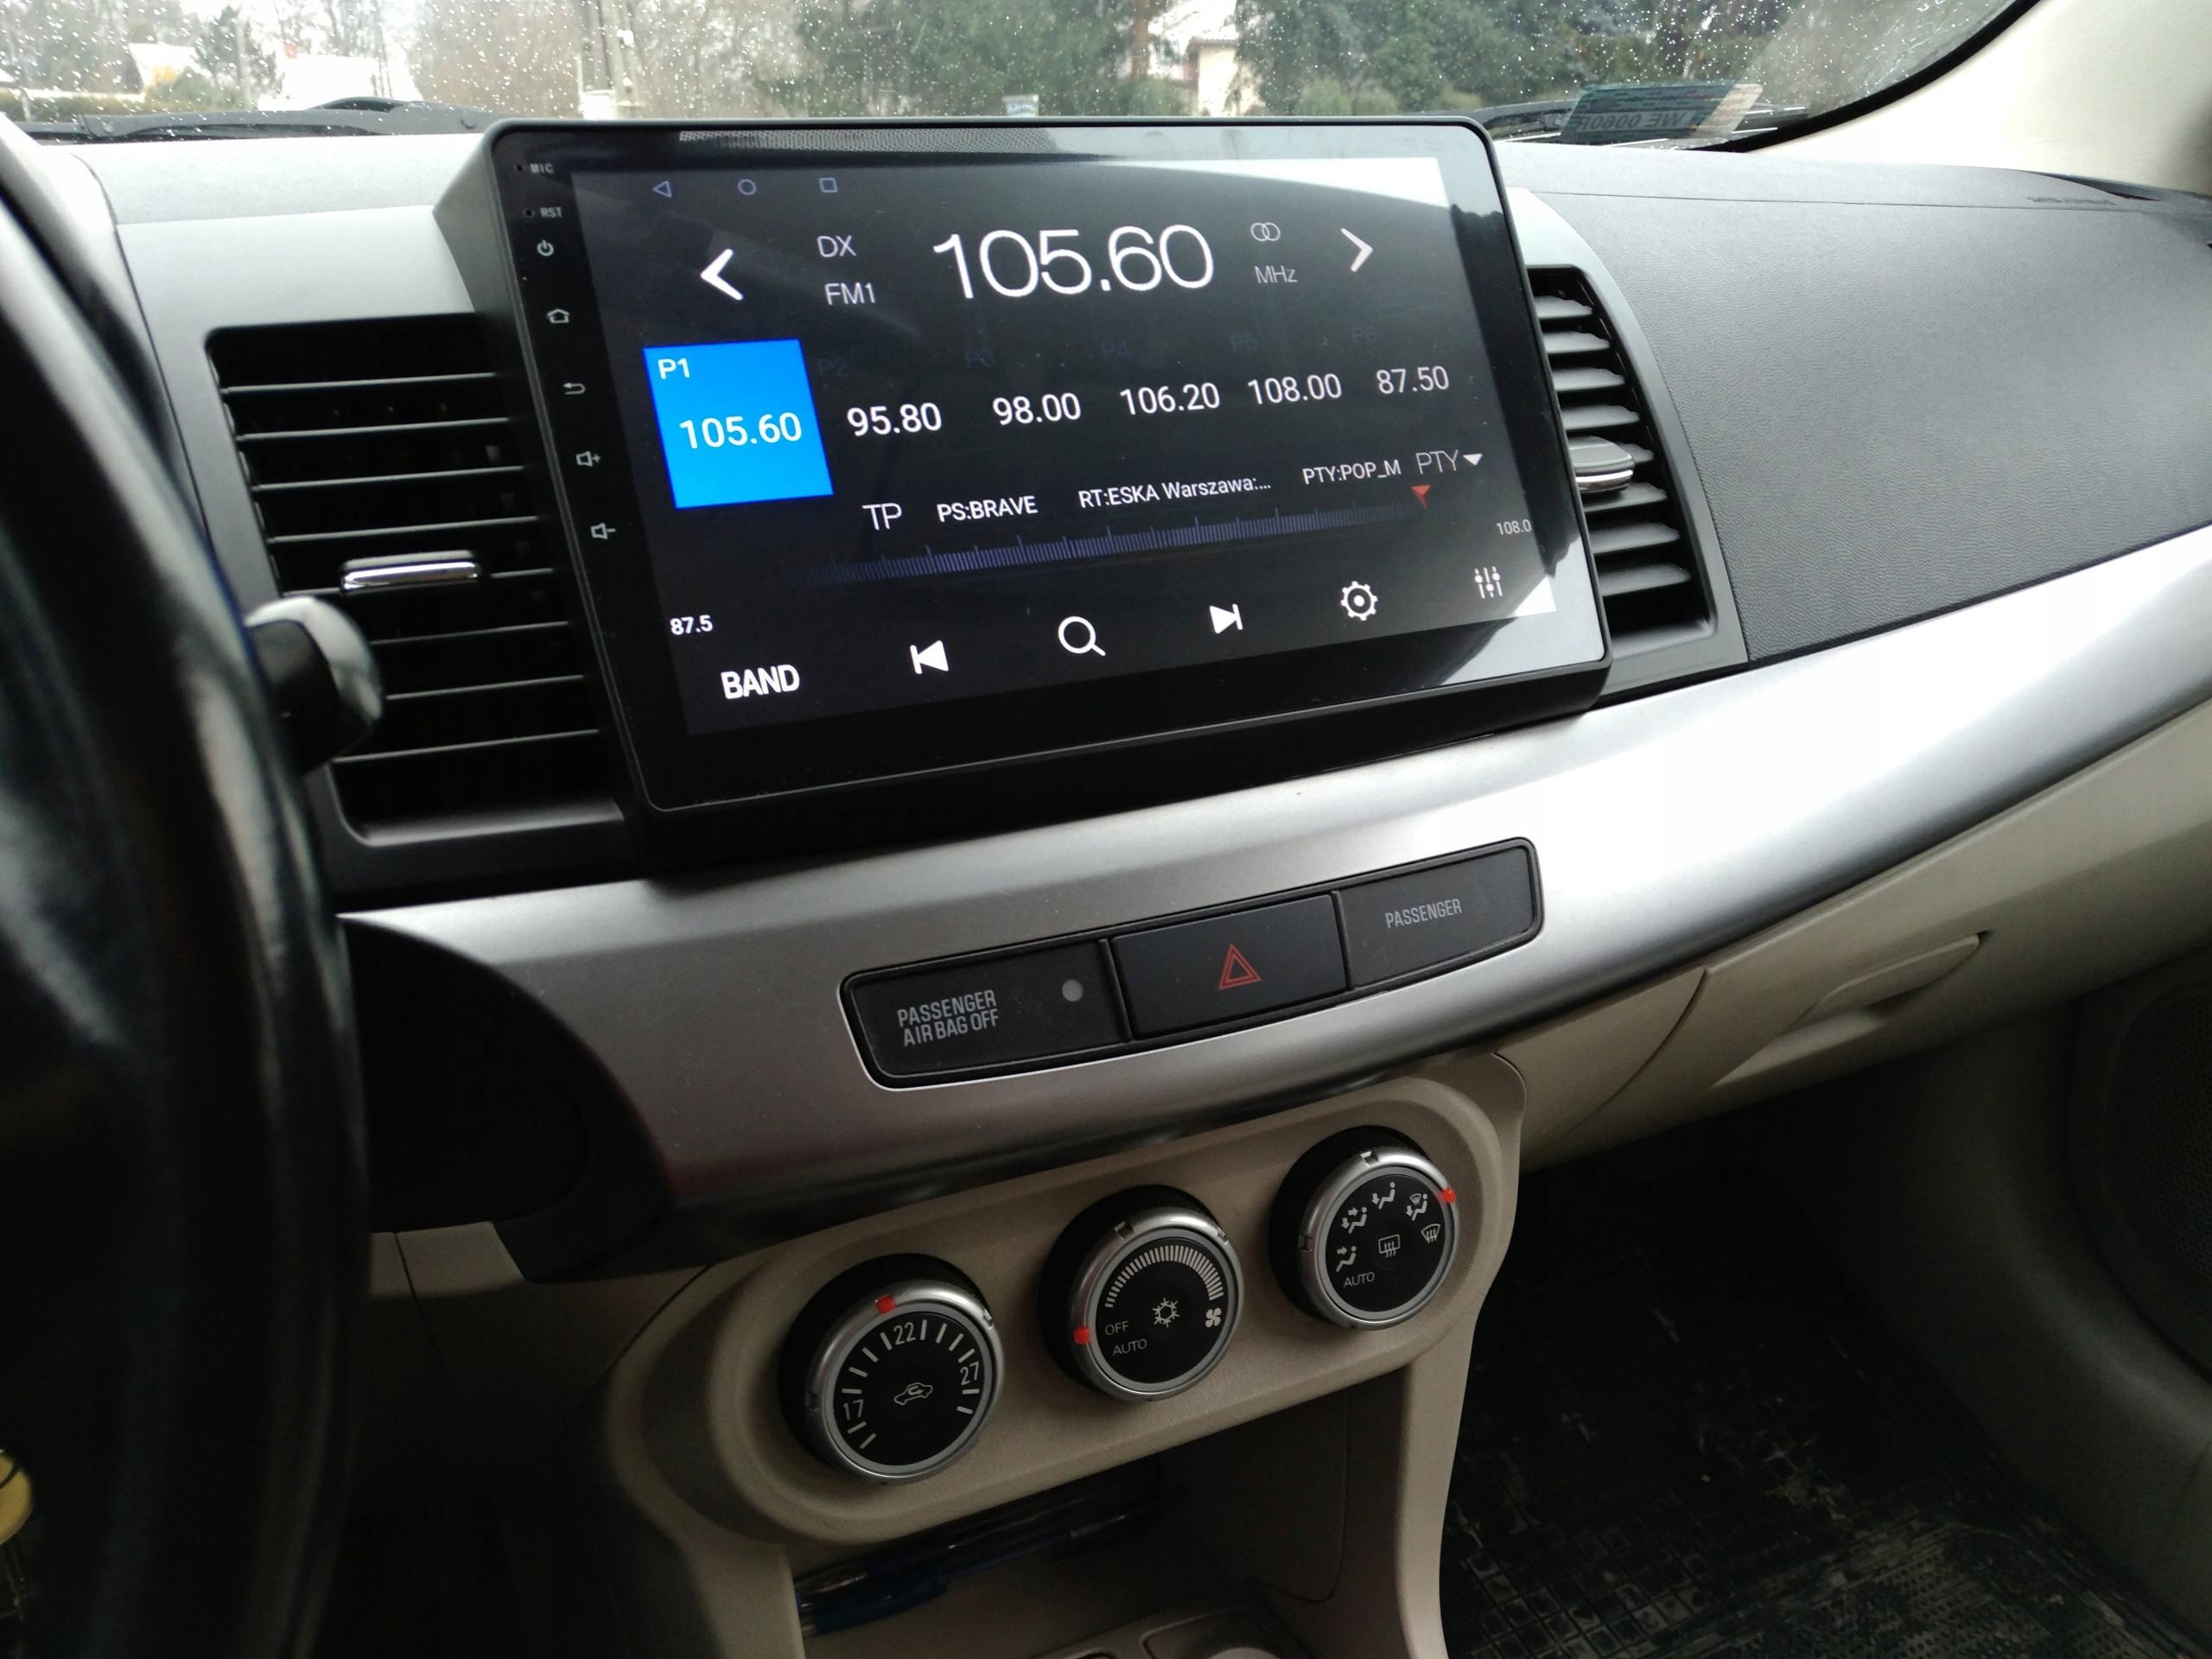 Radio nawigacja Mitsubishi Lancer X Android 10.1